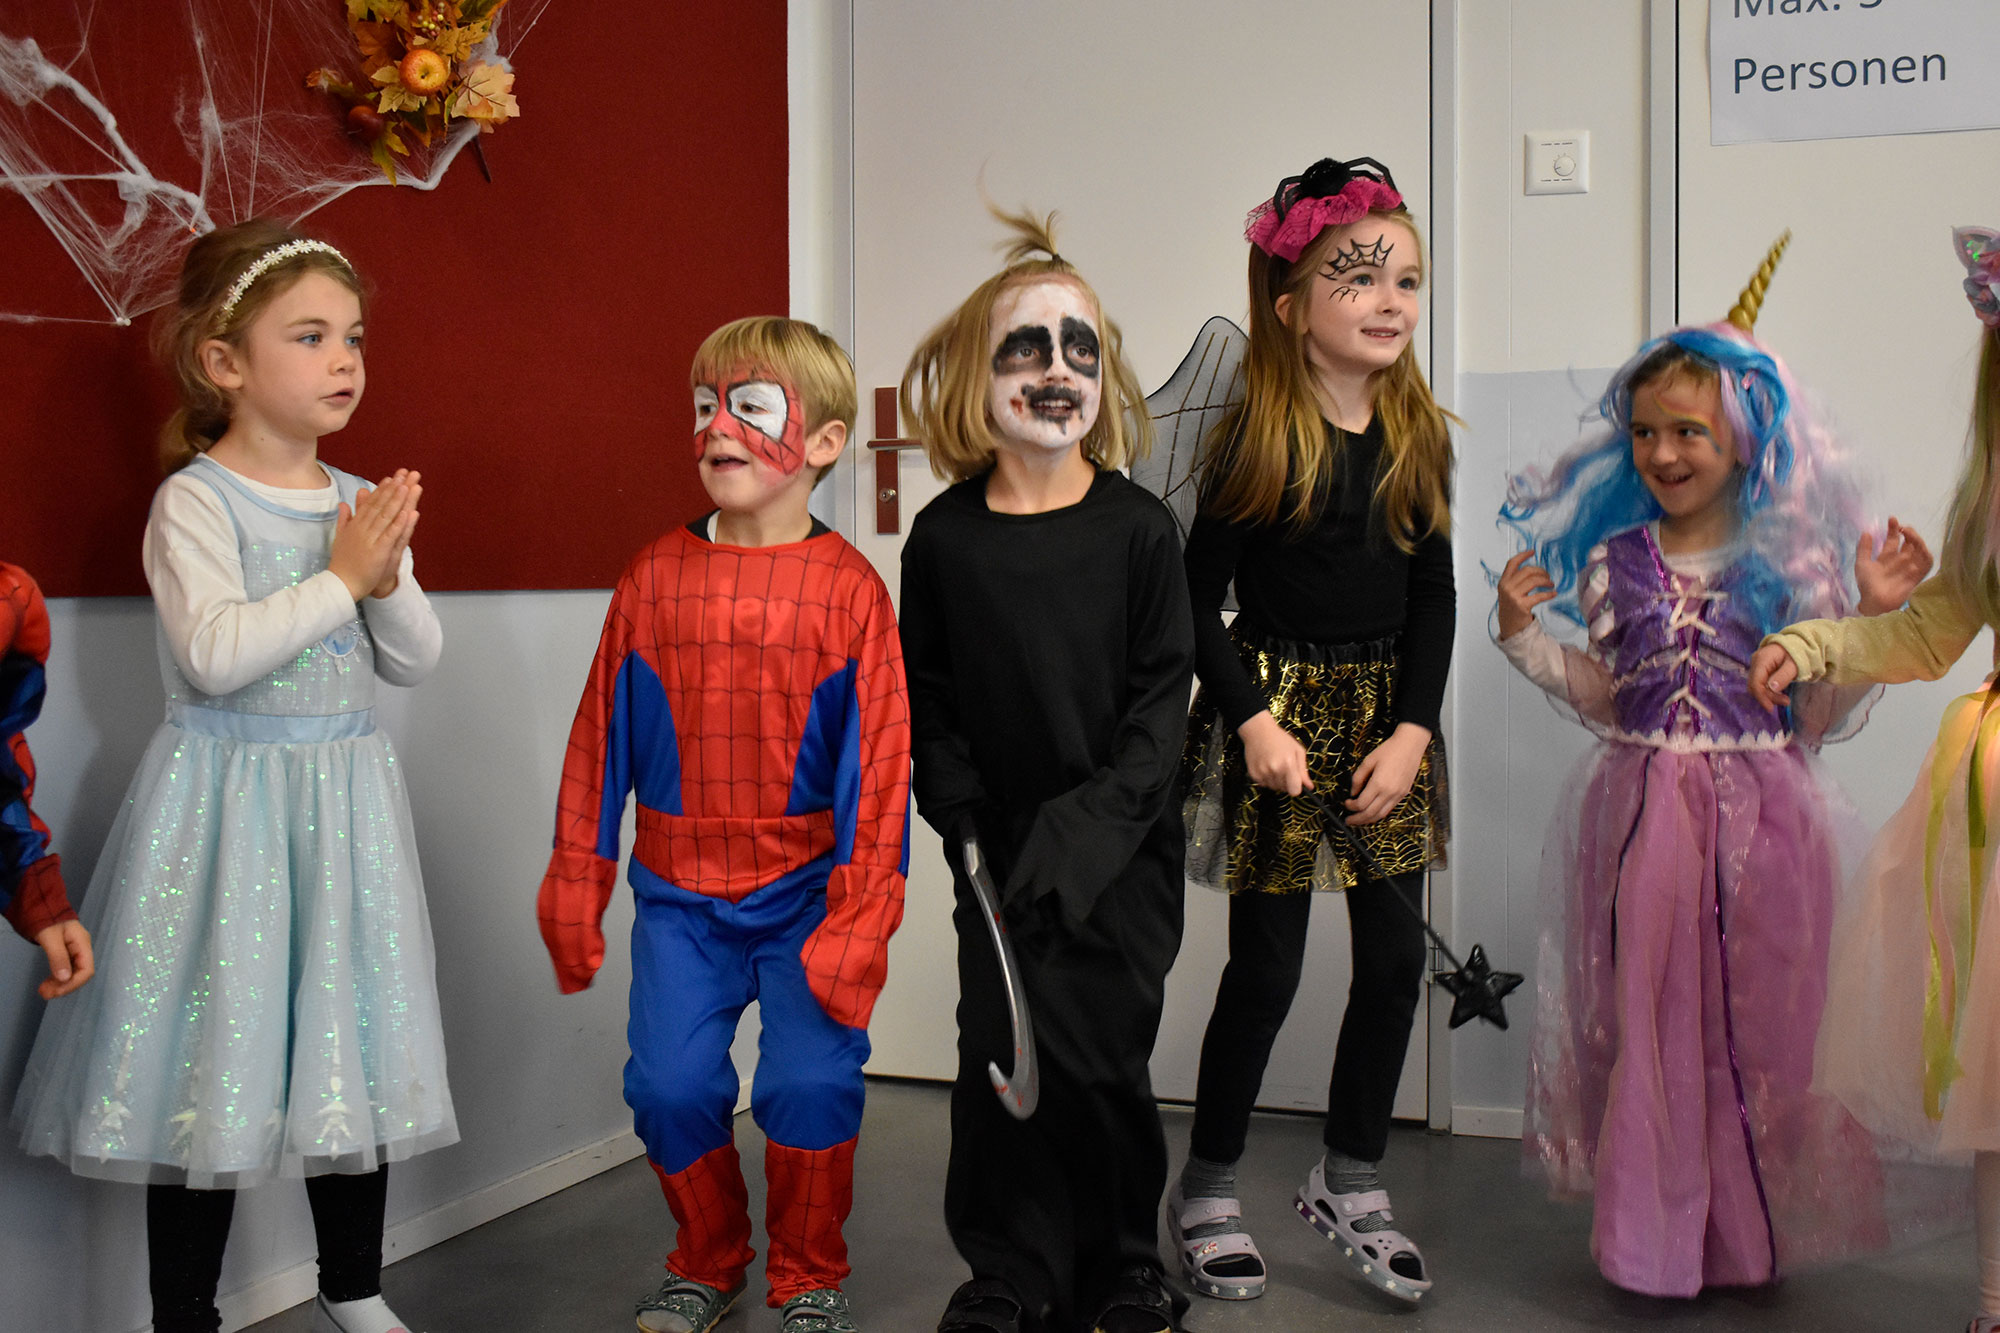 Schülerinnen und Schüler feiern Halloween und tragen bunte Kostäume. Einige sind als Spiderman oder Hexen verkleidet.	